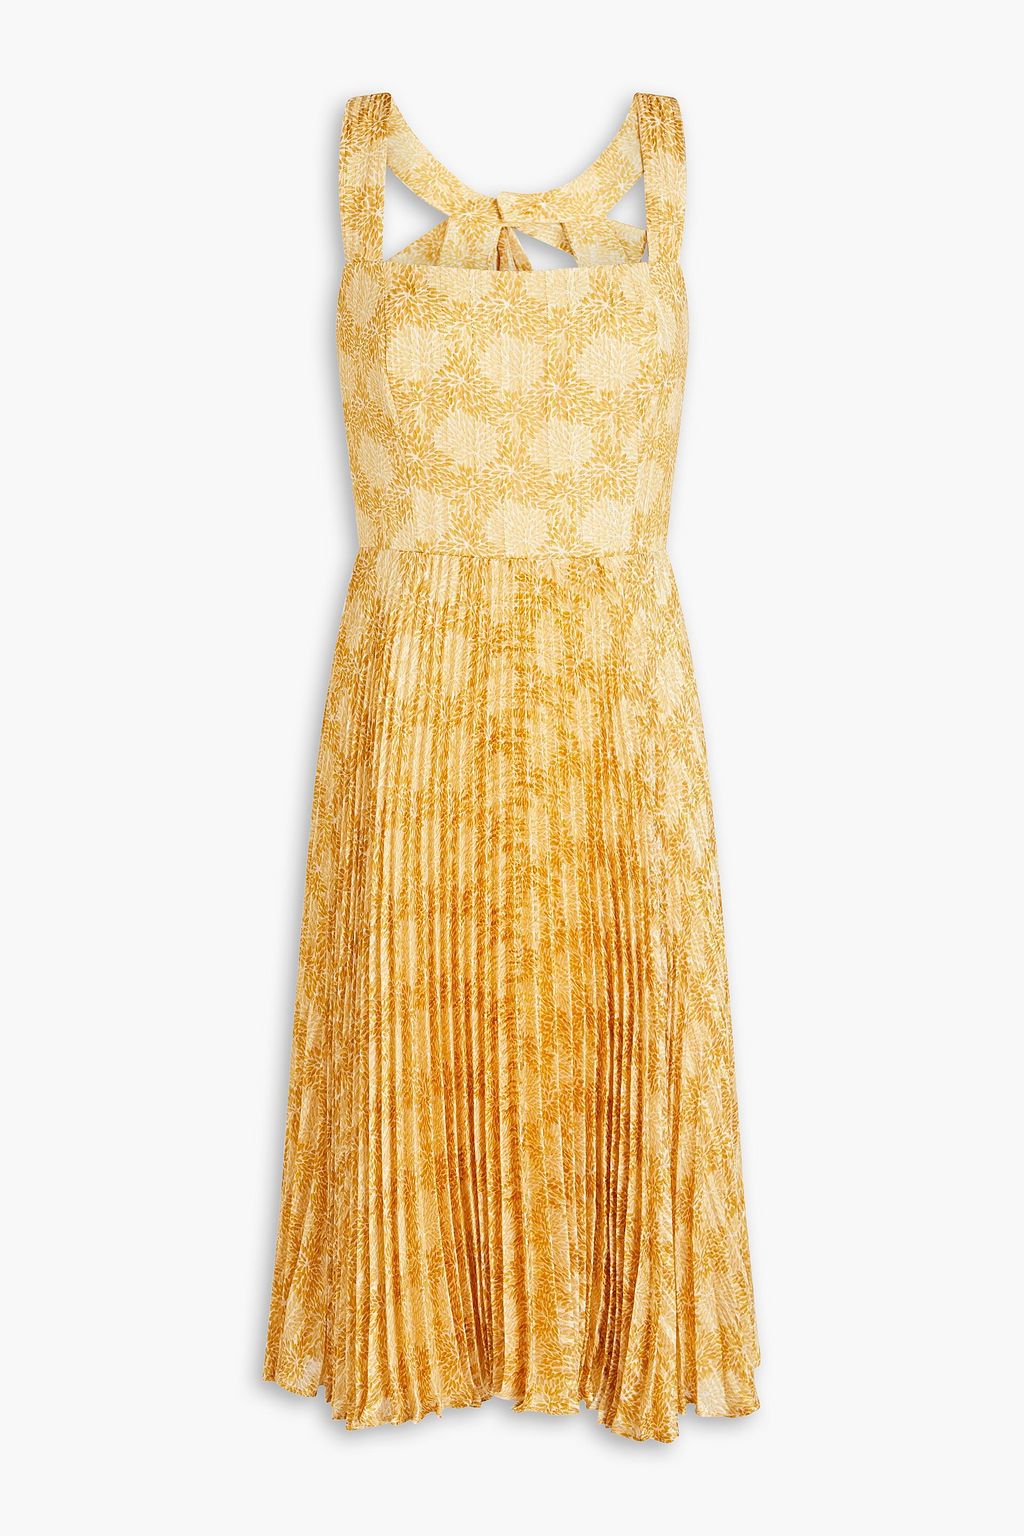 Жаккардовое платье со складками и вырезом MIKAEL AGHAL, желтый